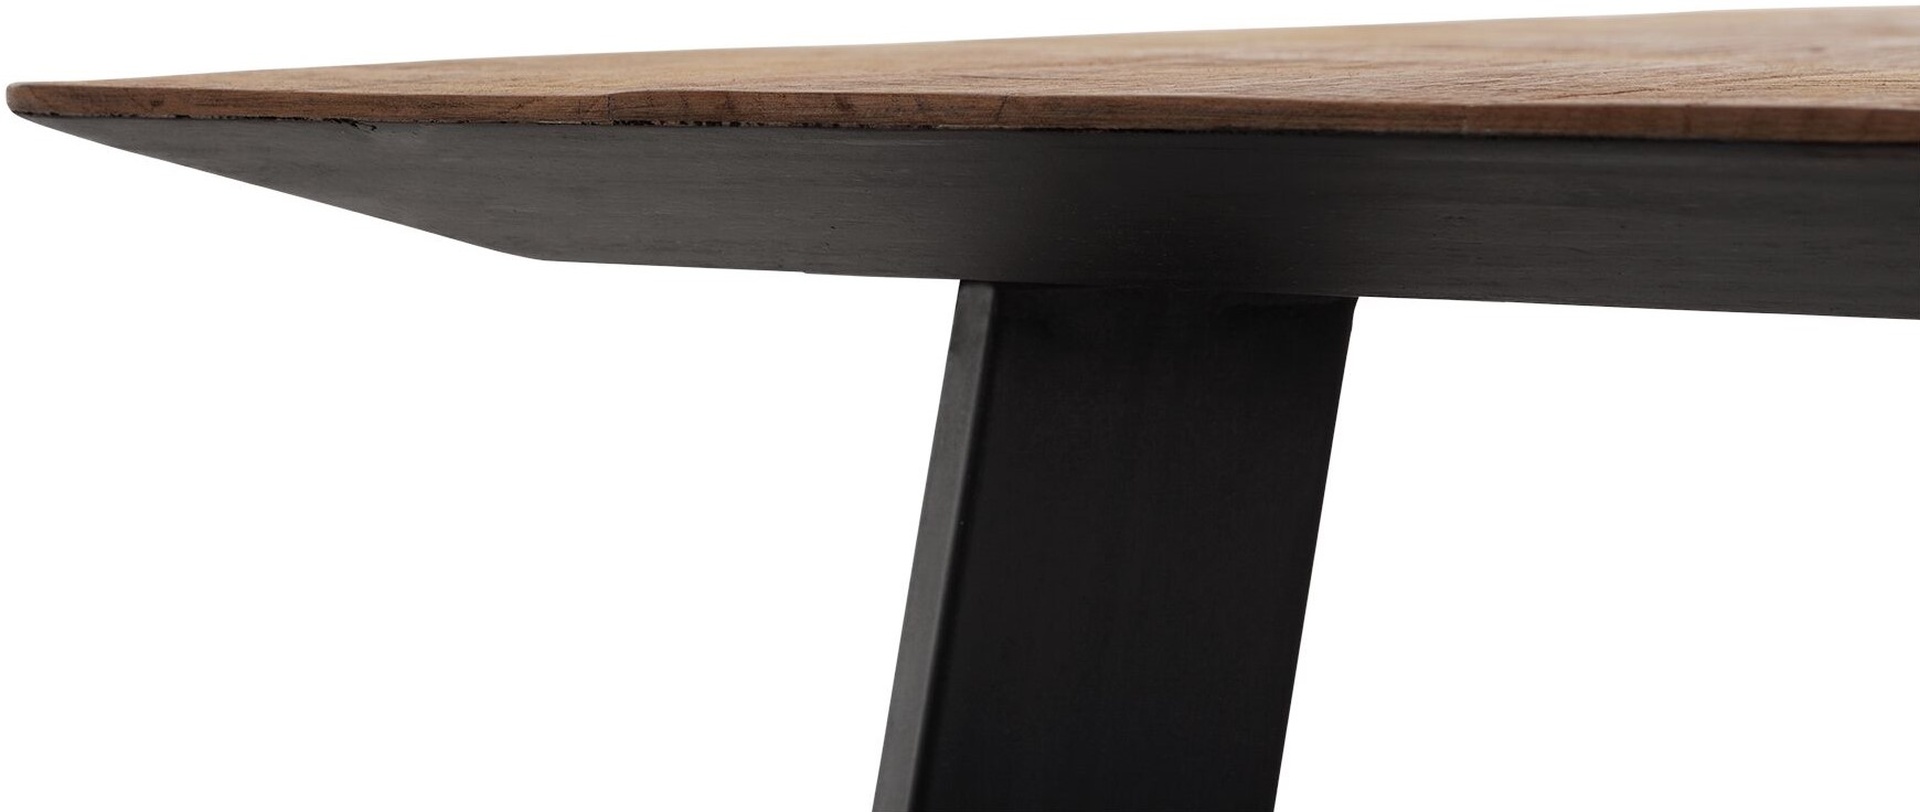 Der Esstisch Shapes überzeugt mit seinem modernem aber auch massivem Design. Gefertigt wurde der Tisch aus recyceltem Teakholz, welches einen natürlichen Farbton besitzt. Das Gestell ist aus Metall und ist Schwarz. Der Tisch hat eine Länge von 225 cm.